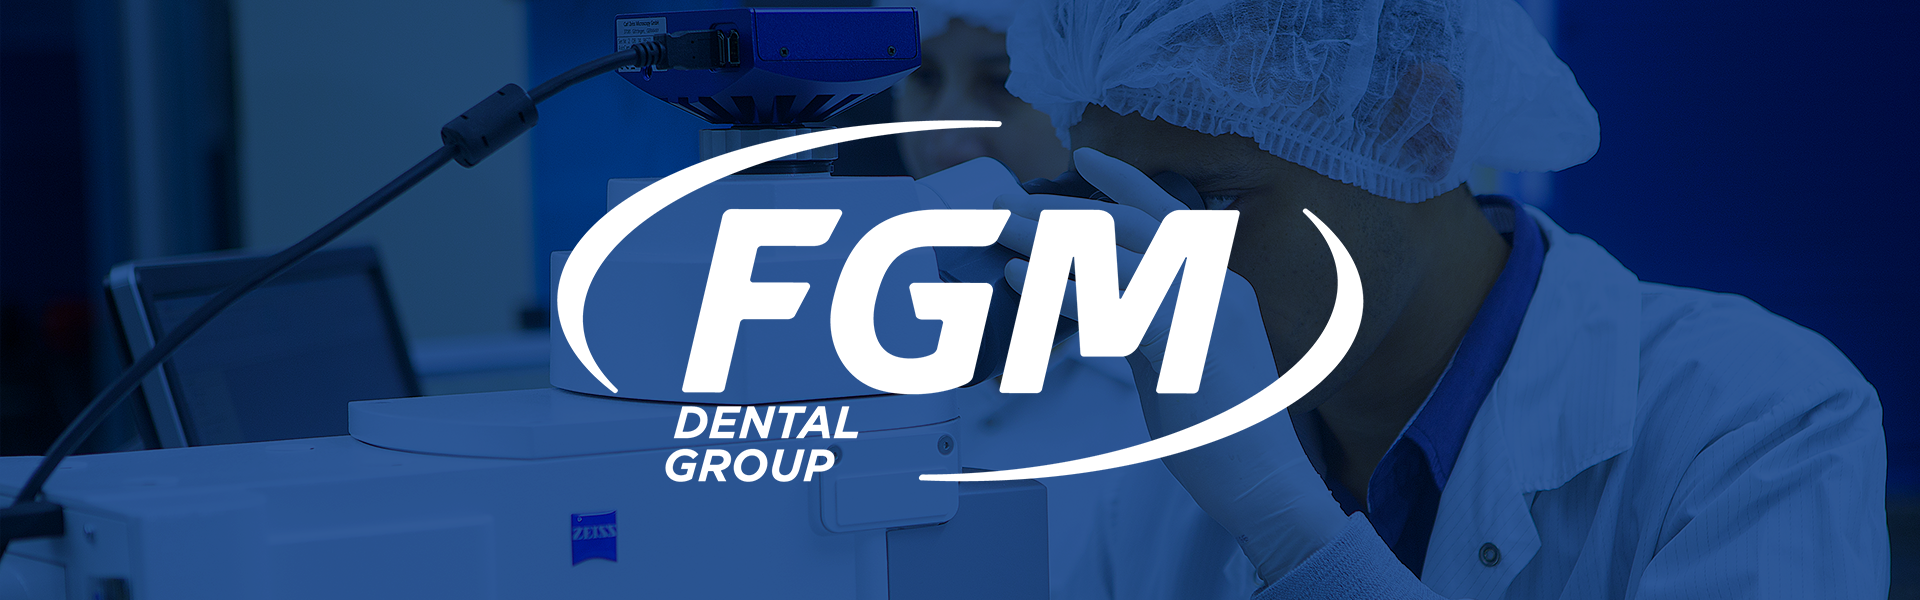 caoa fgmdental blog - Procesos regulatorios de FGM le garantizan seguridad y calidad al resultado final